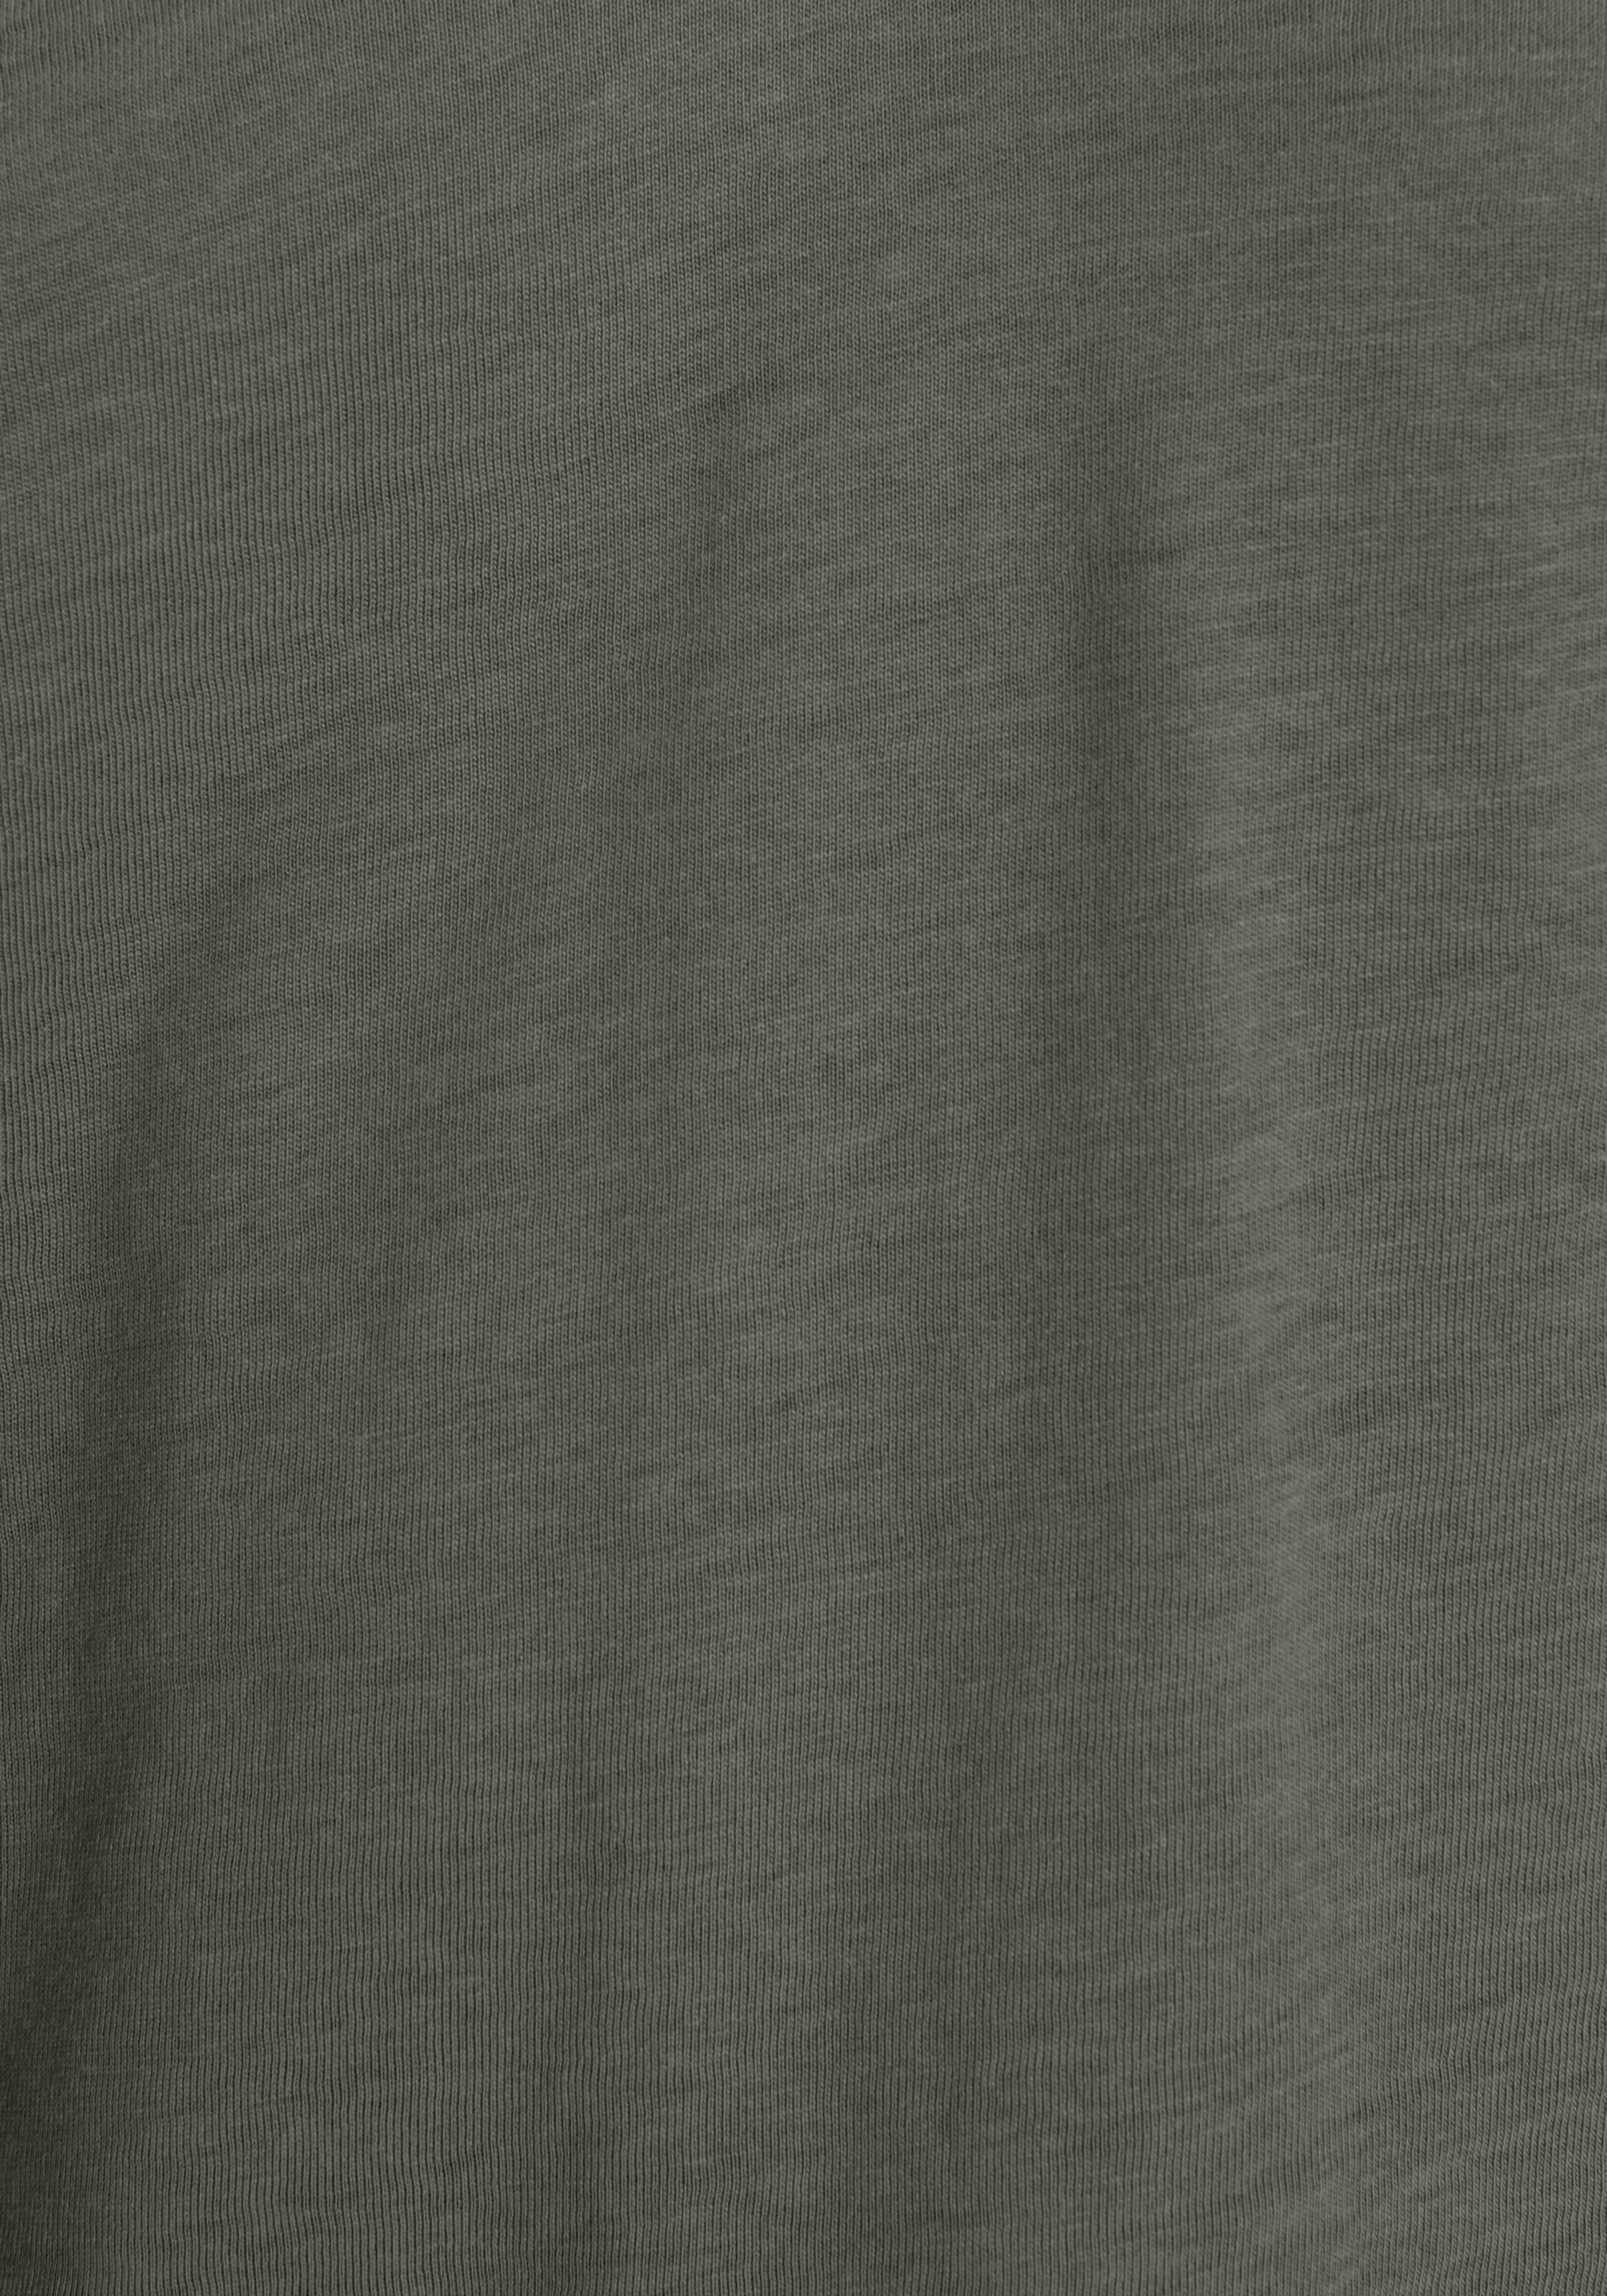 HECHTER PARIS T-Shirt, Mit eleganten Spitzen-Details - NEUE KOLLEKTION